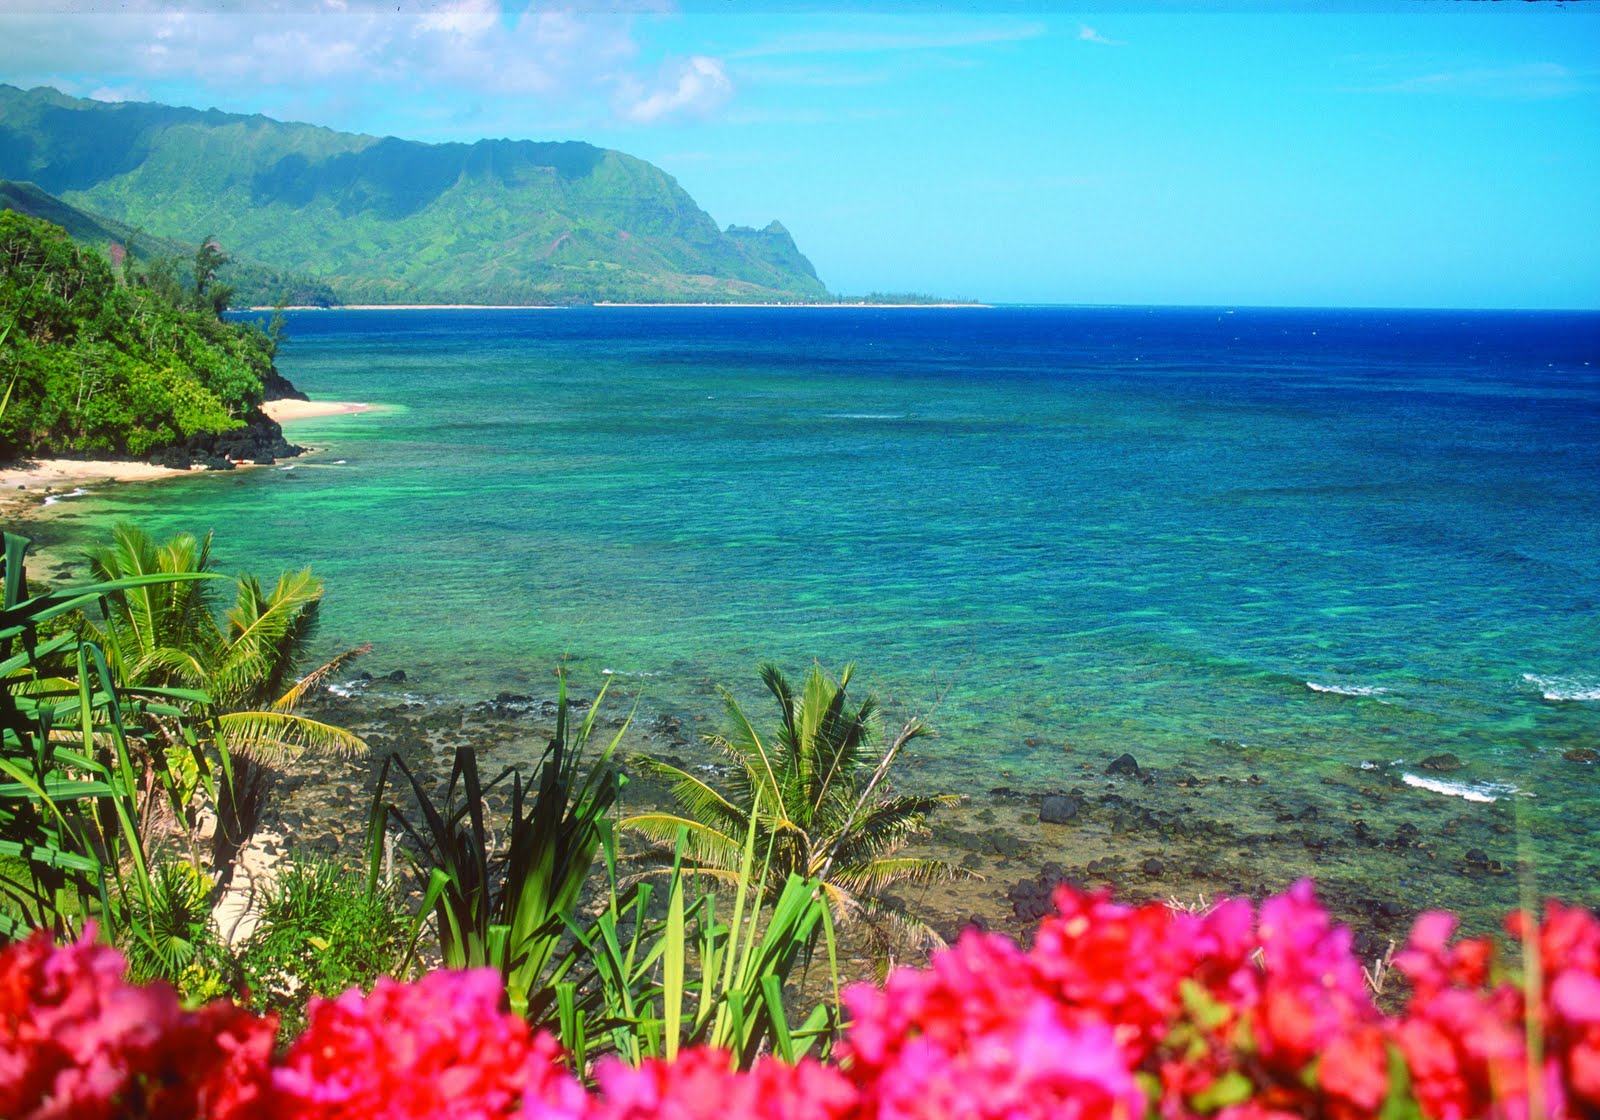 ... pe post de wallpapere pentru desktop imagine desktop plaja hawaii 1